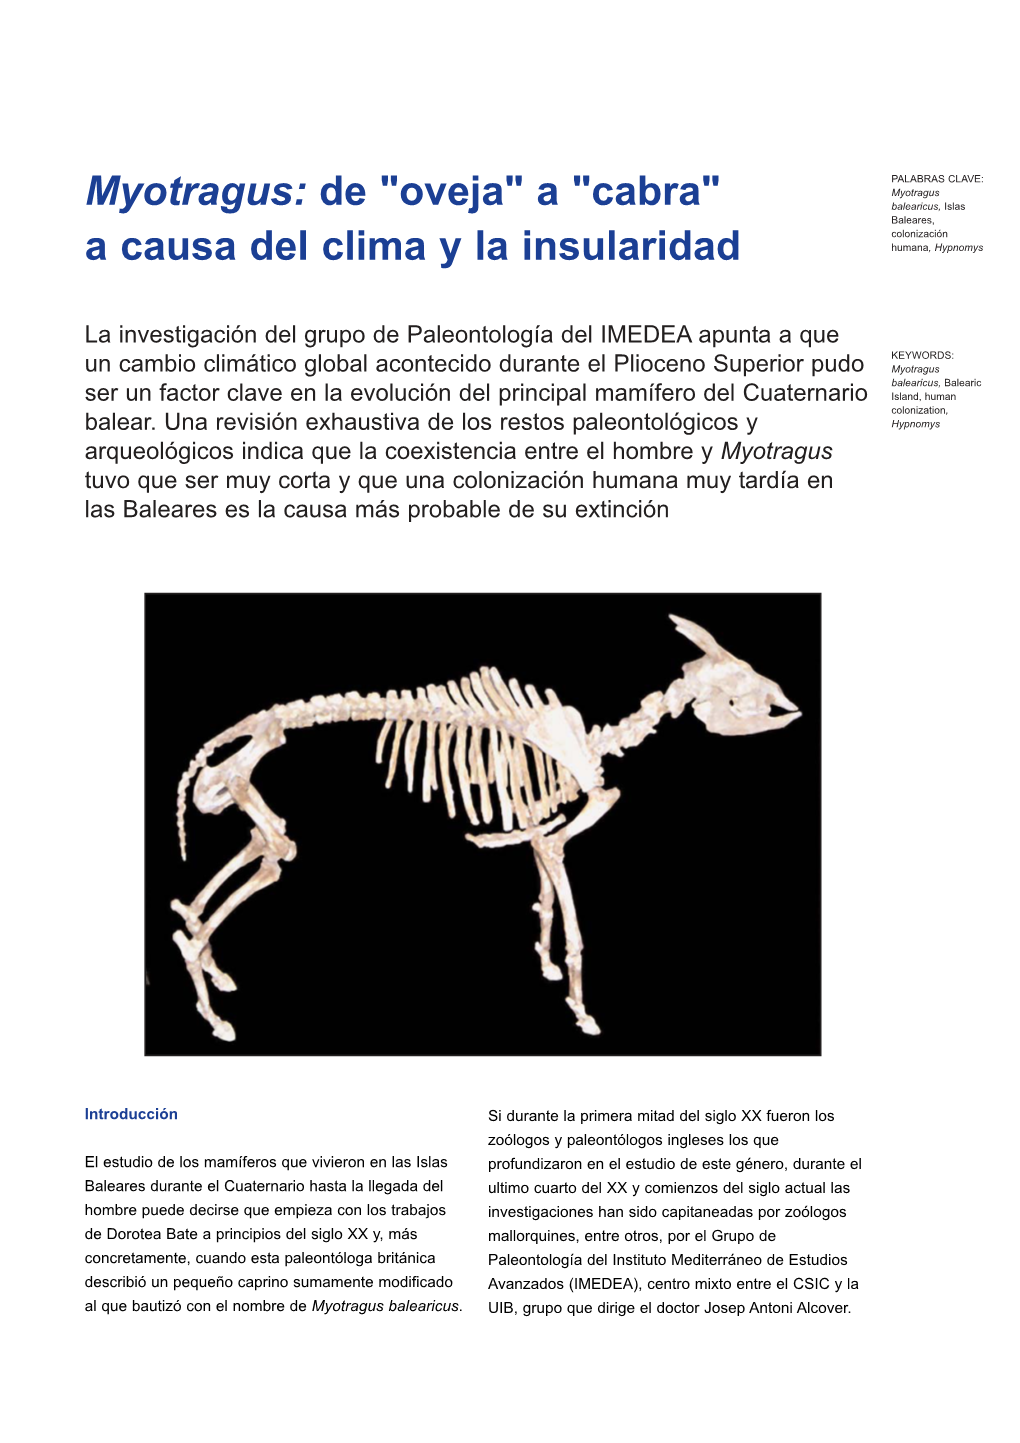 Myotragus: De "Oveja" a "Cabra" a Causa Del Clima Y La Insularidad